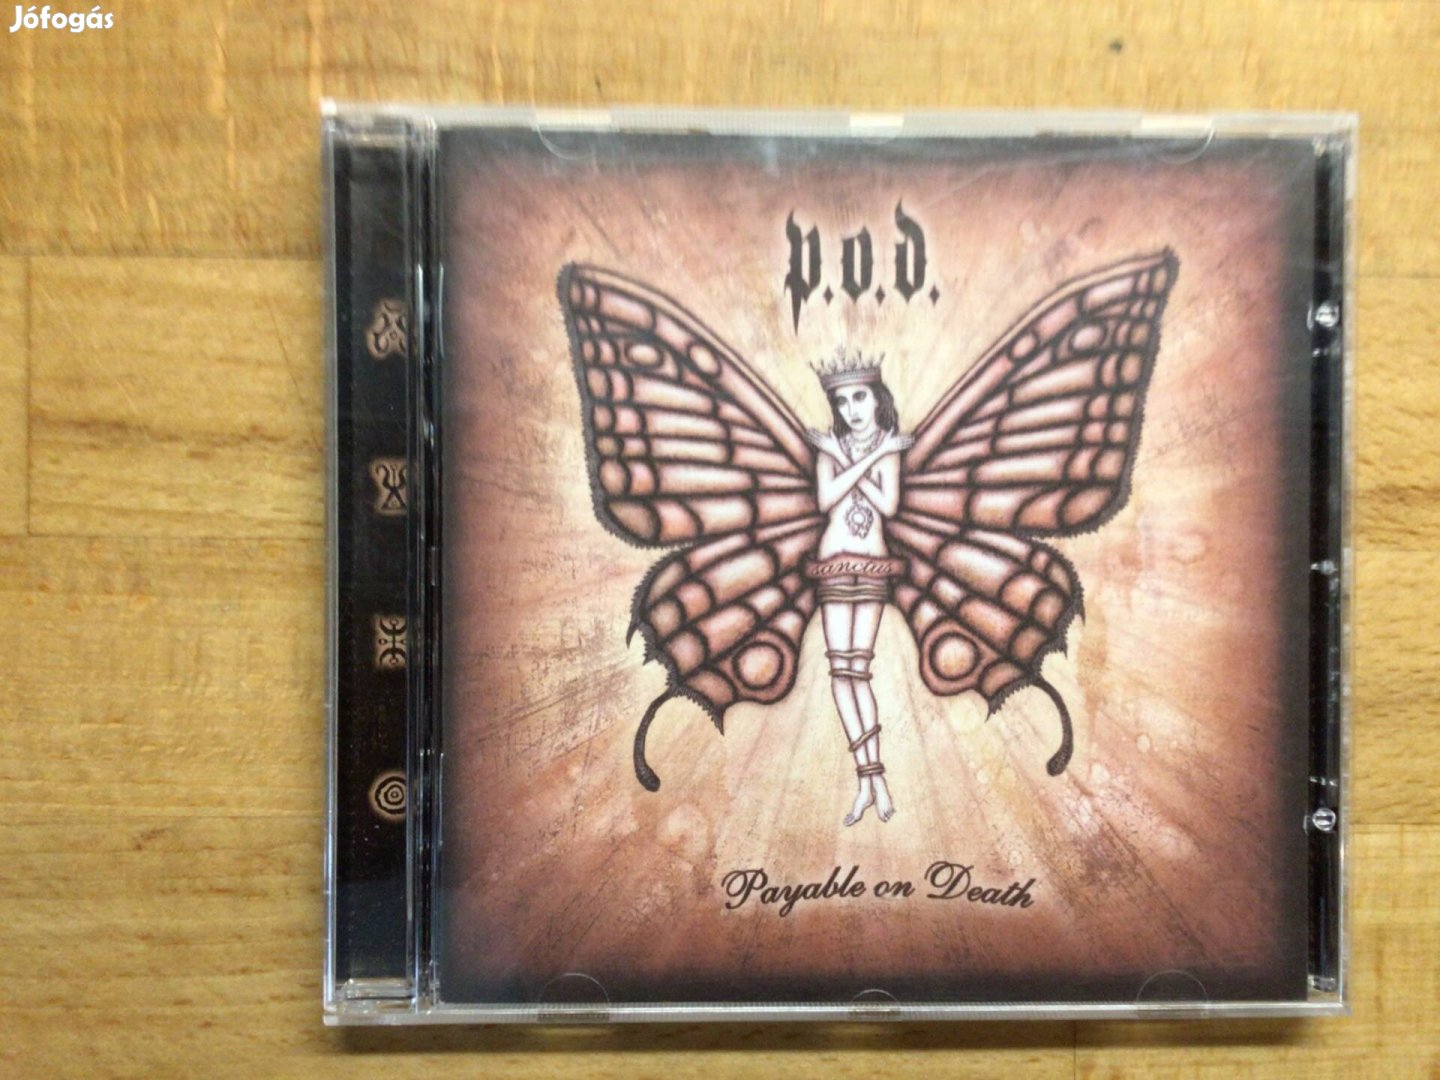 P.O.D. - Payable On Death, cd lemez